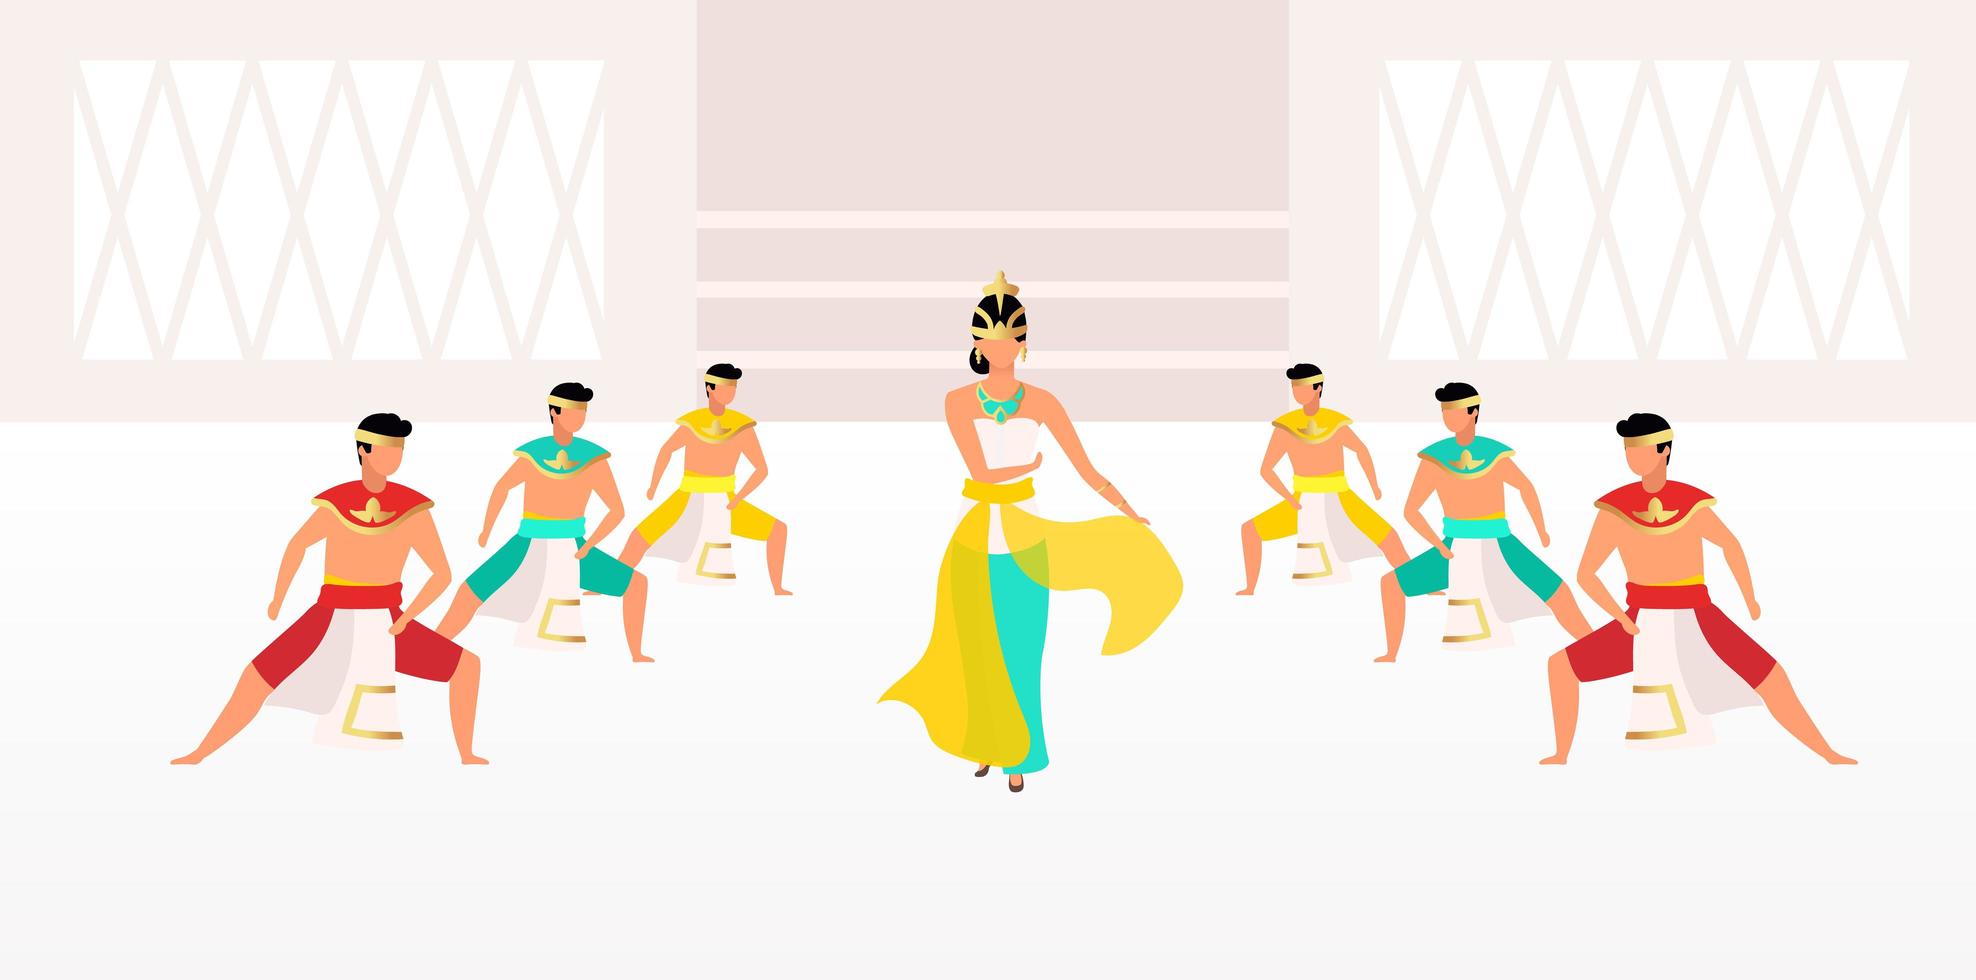 danze indonesiane piatto illustrazione vettoriale. celebrazione tradizionale. celebrazione asiatica. uomini e donne vestiti con abiti tradizionali personaggi dei cartoni animati vettore